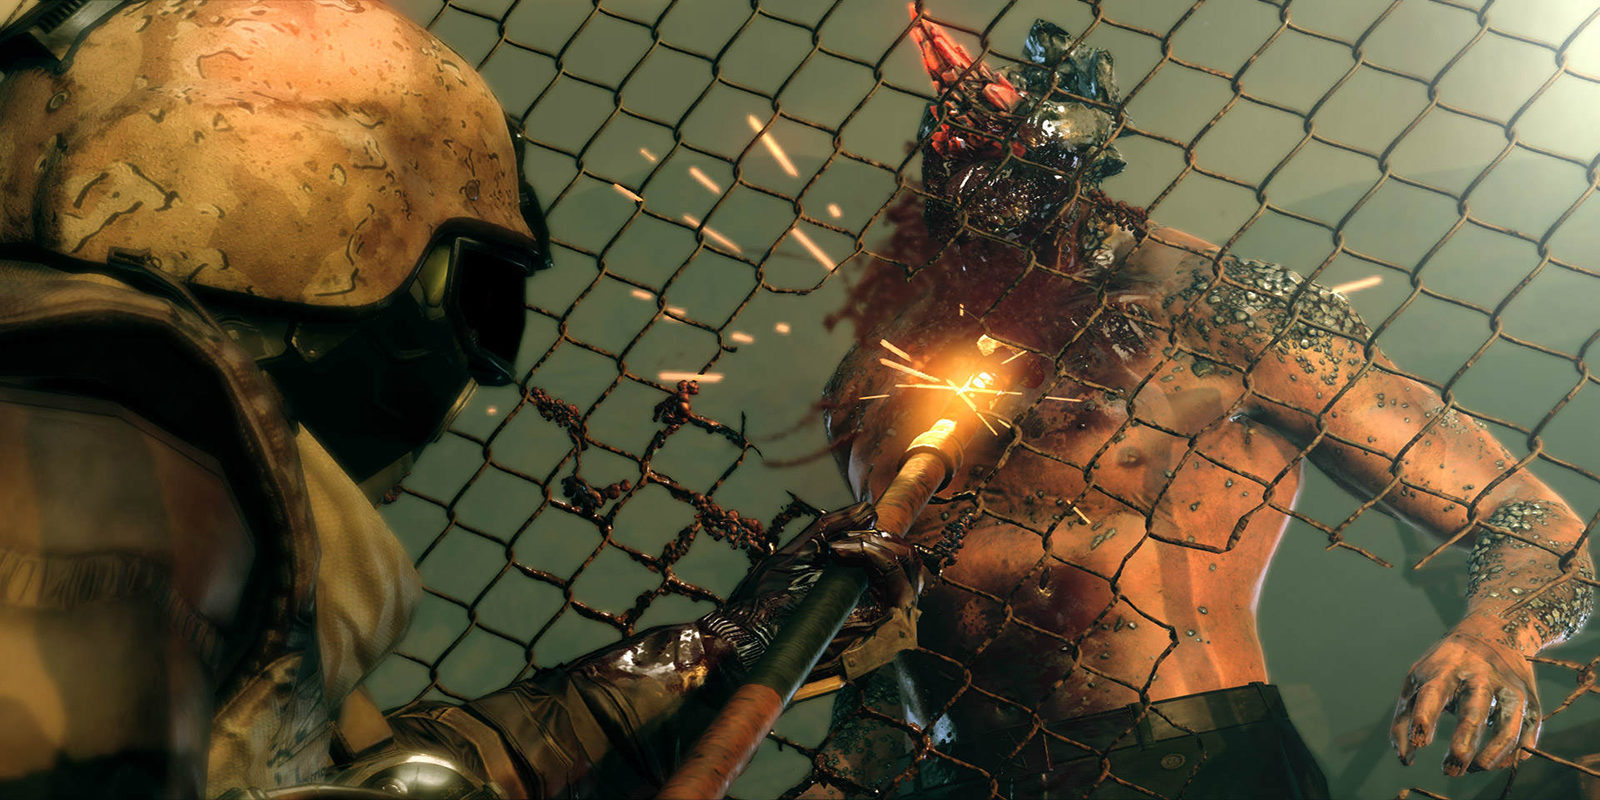 Hoy ha muerto la saga 'Metal Gear Solid' - La Zona